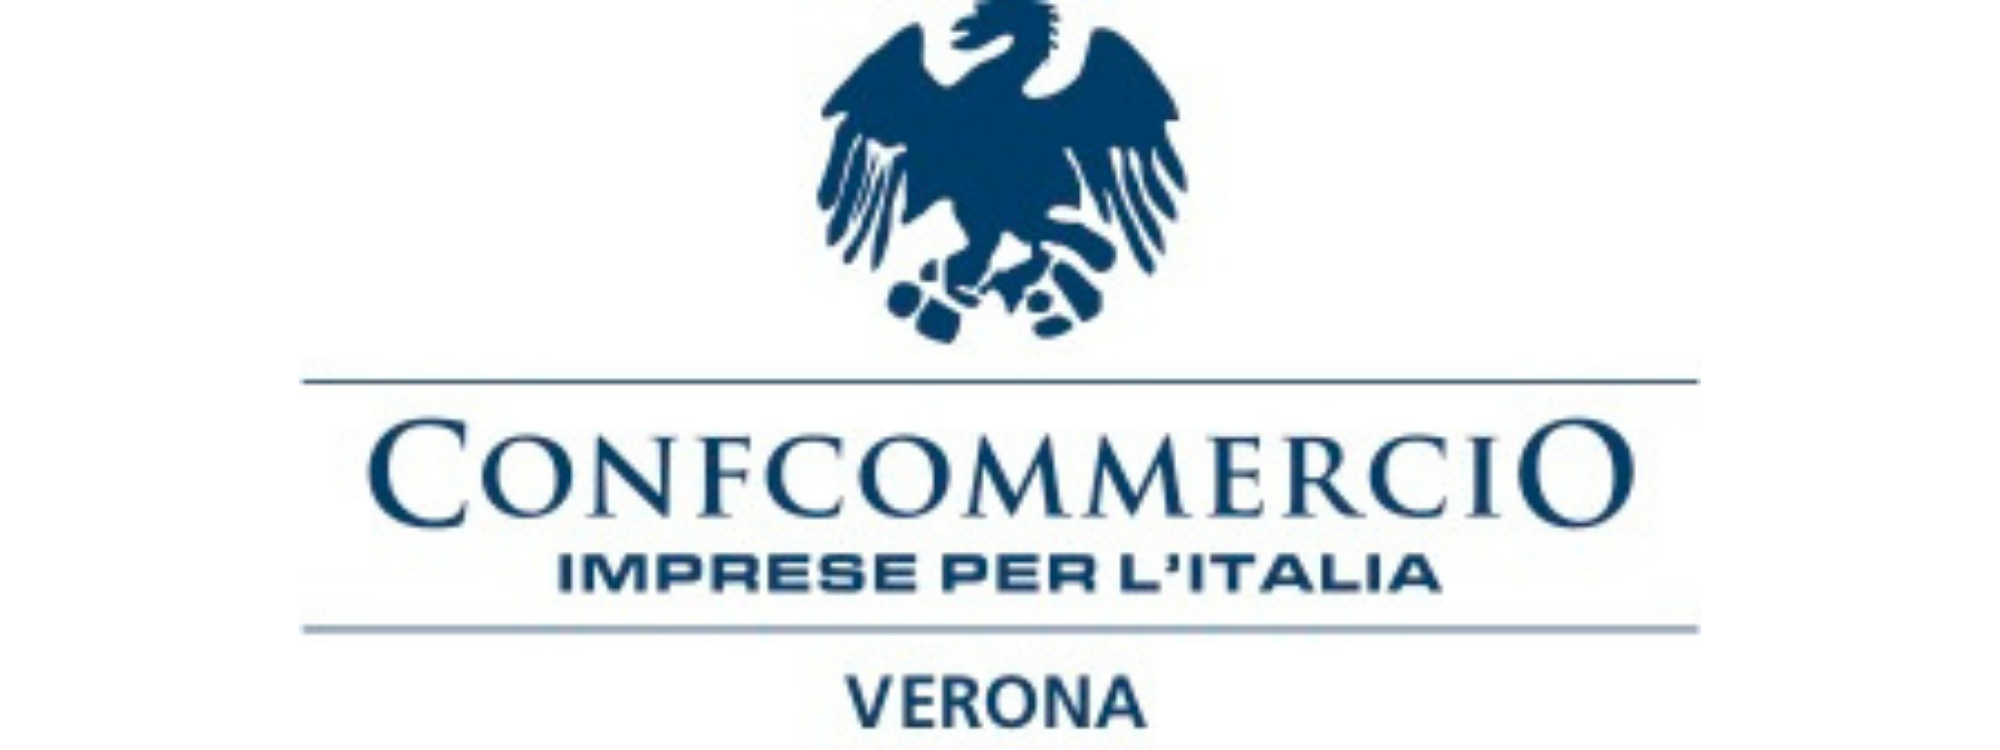 Confcommercio Verona